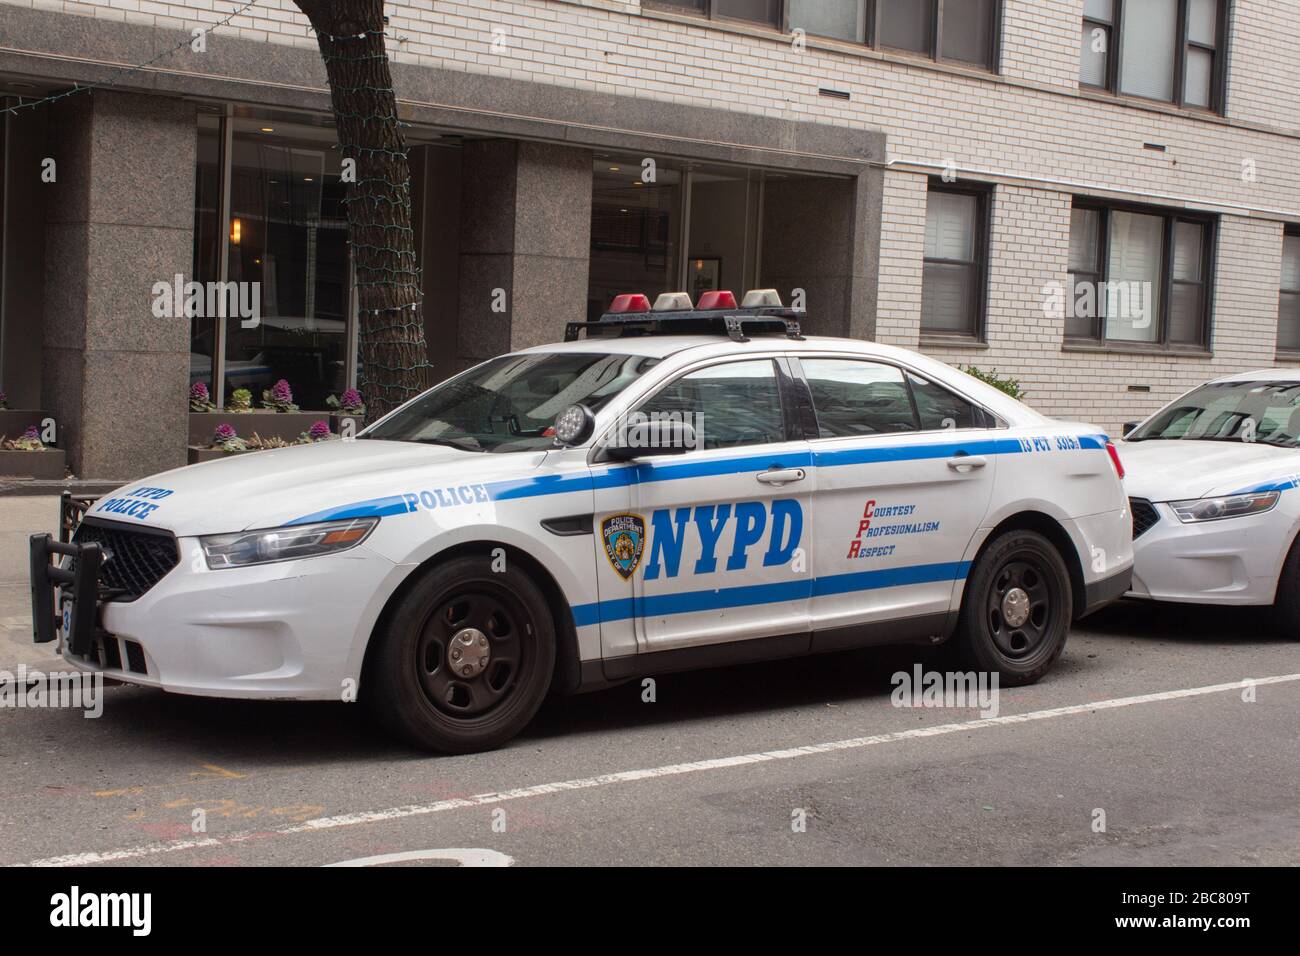 Ein Fahrzeug der New yorker Polizeibehörde, das auf einer Straße in der Stadt abgestellt wurde. Der NYPD wurde in vielen tv-Serien porträtiert Stockfoto